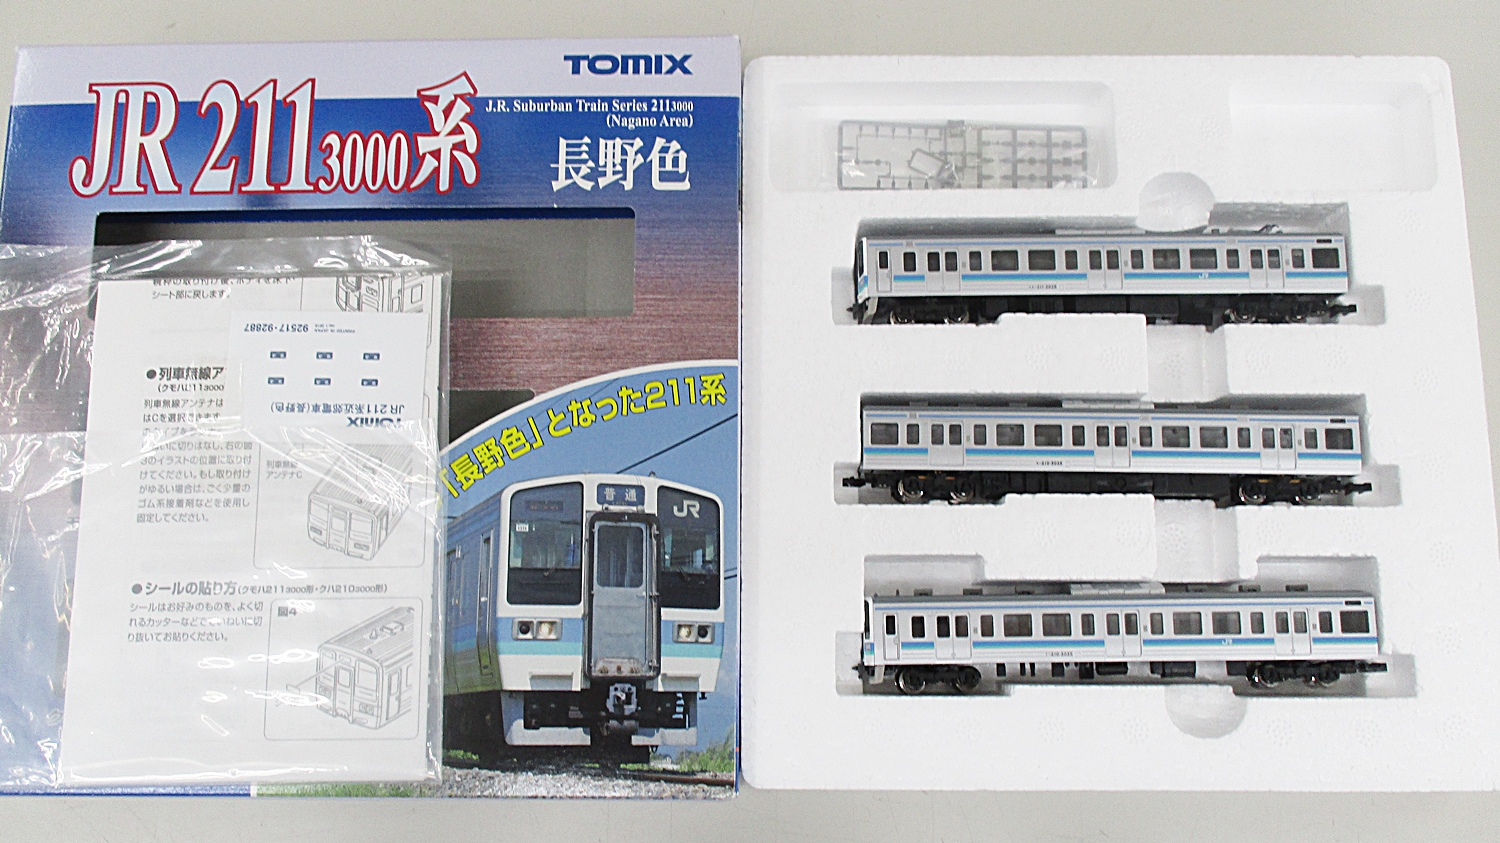 TOMIX JR 211系3000番台 近郊電車 (長野色) 【新品,未使用品】 - 鉄道模型